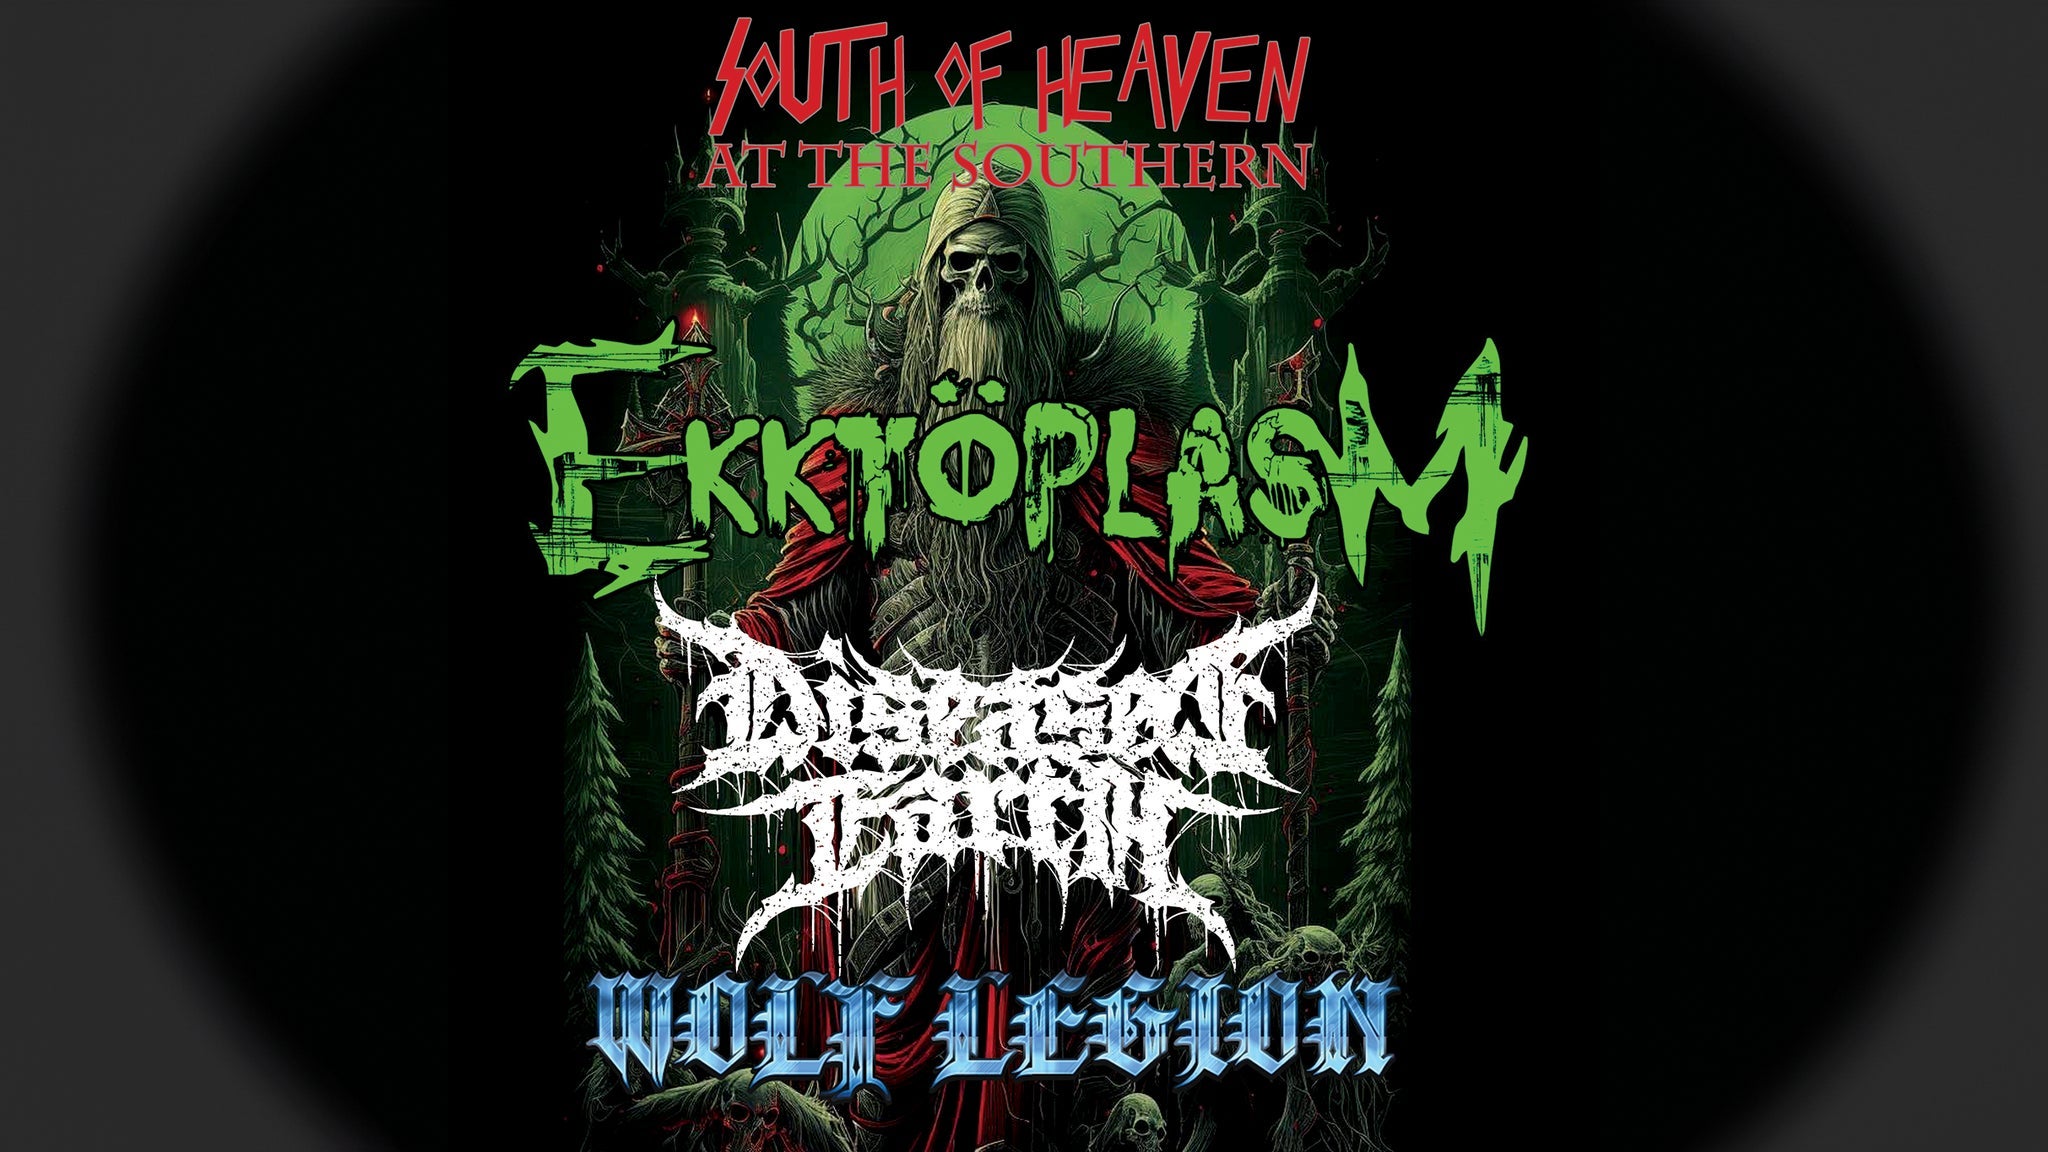 South Of Heaven with Ekktoplasm, Wolf Legion & Diseased Earth